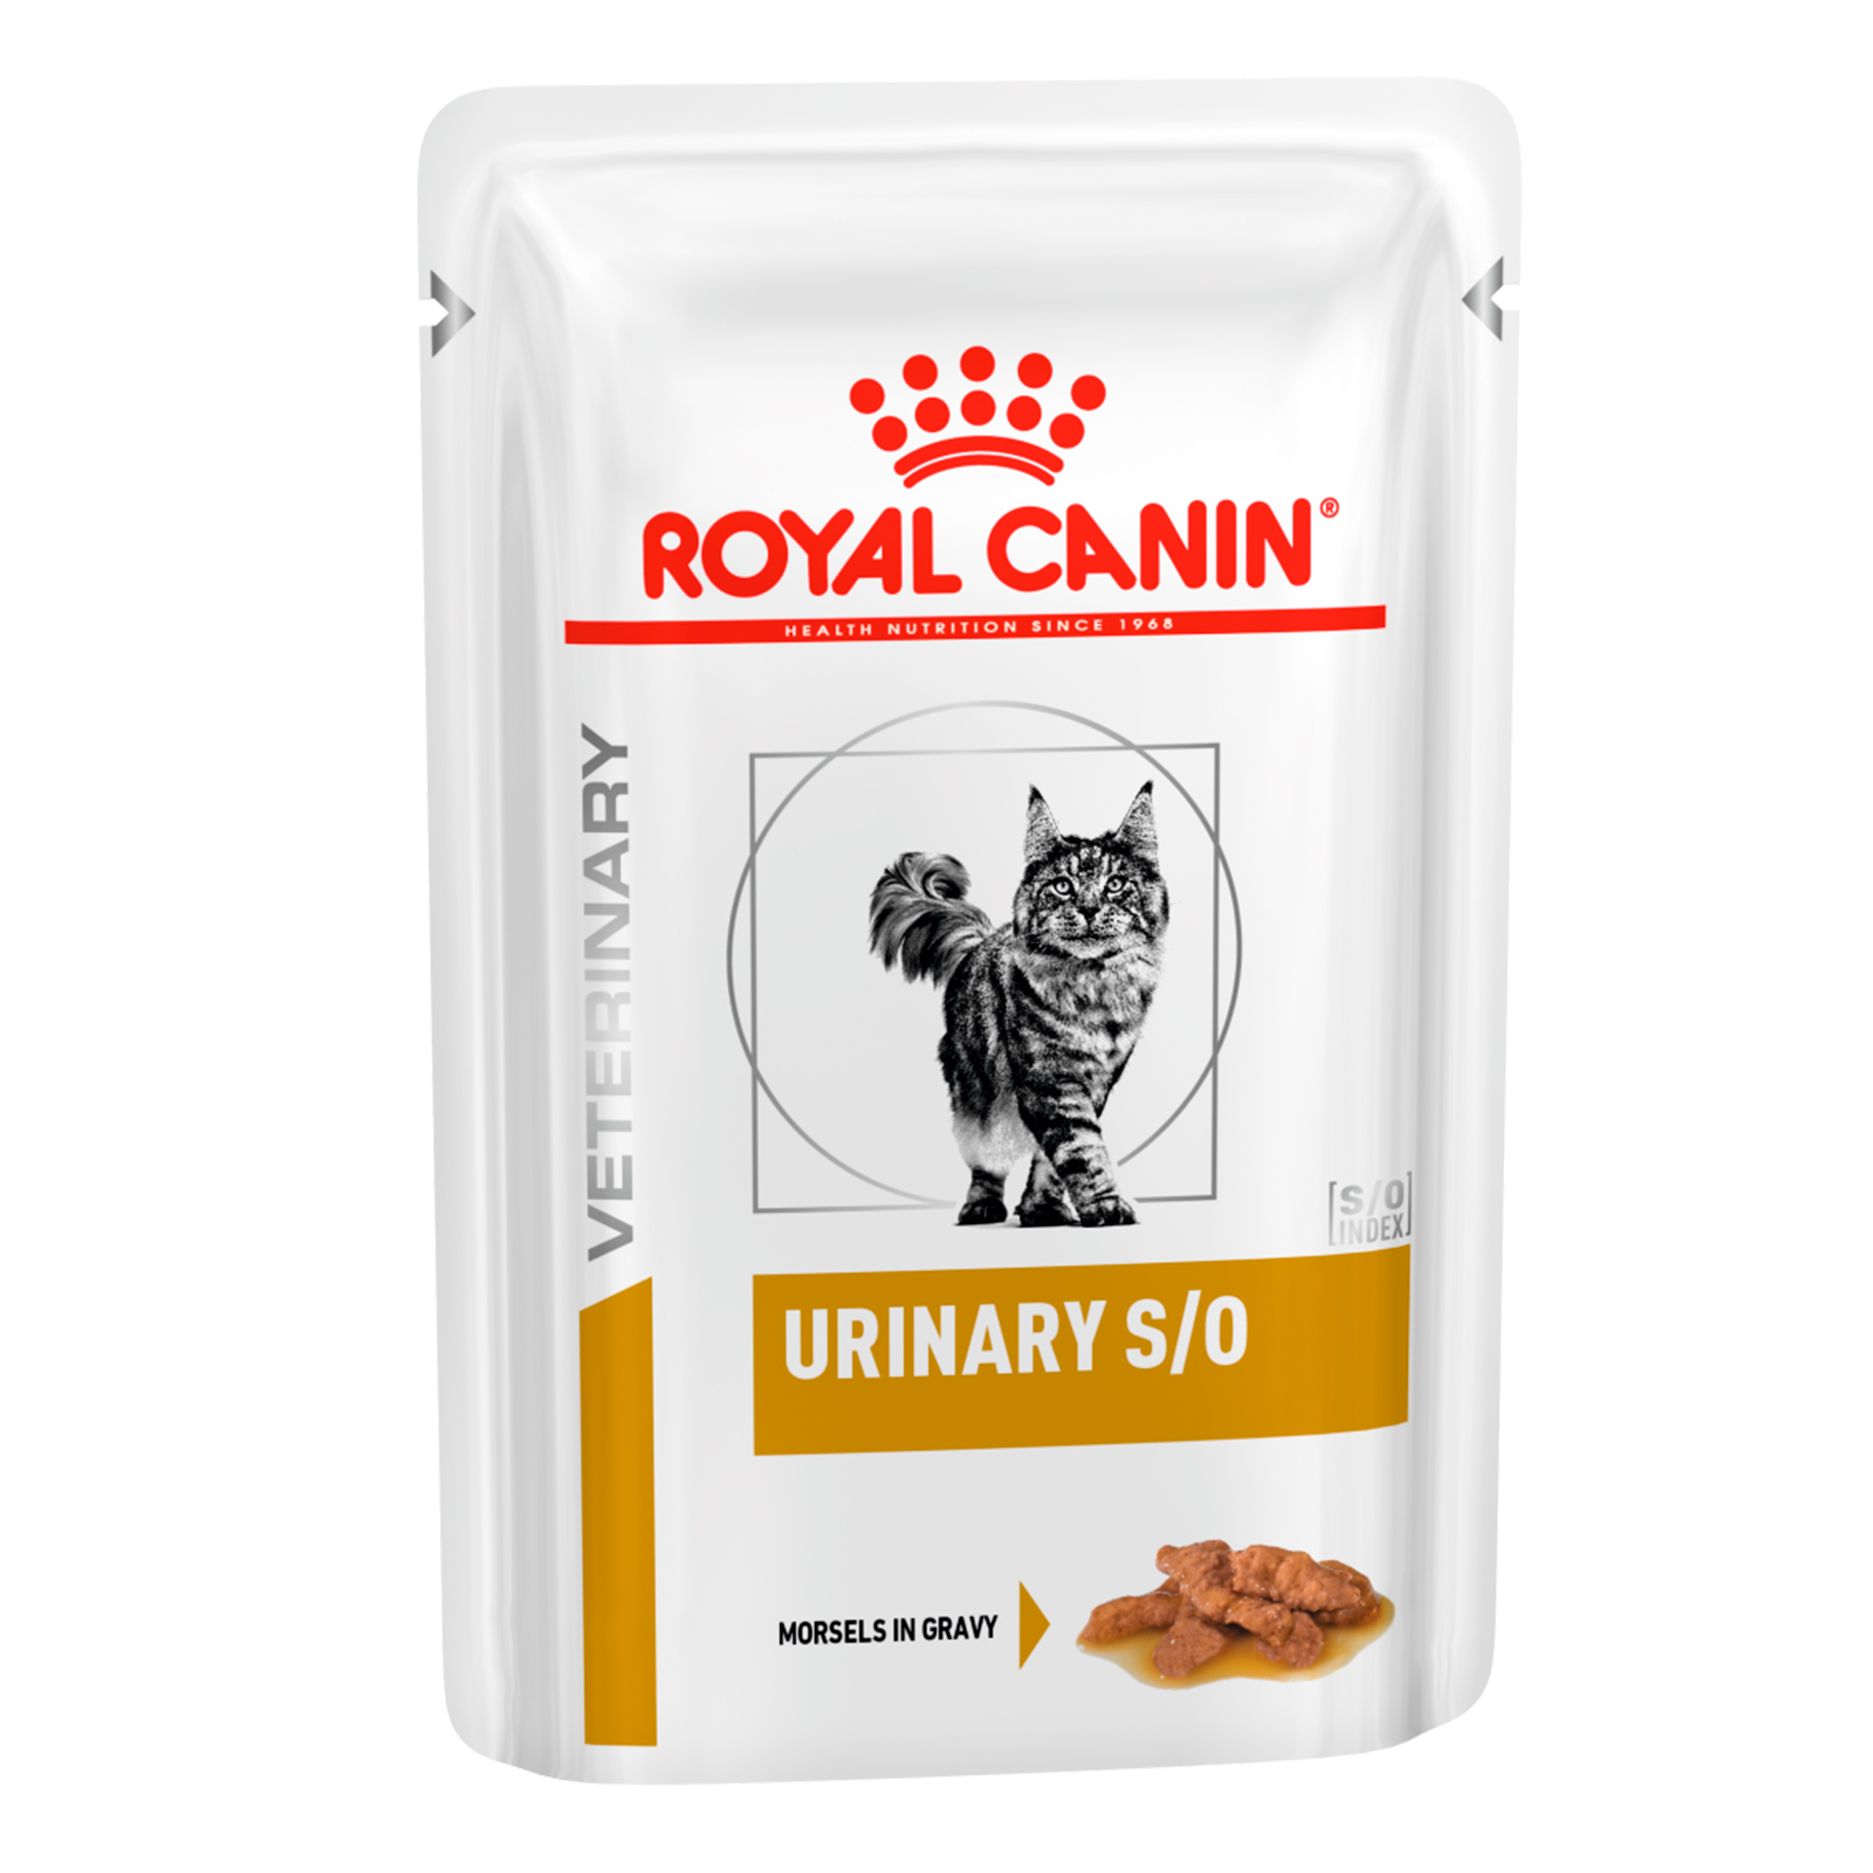 Royal Canin Urinary S/O пауч для кошек 85 г 1